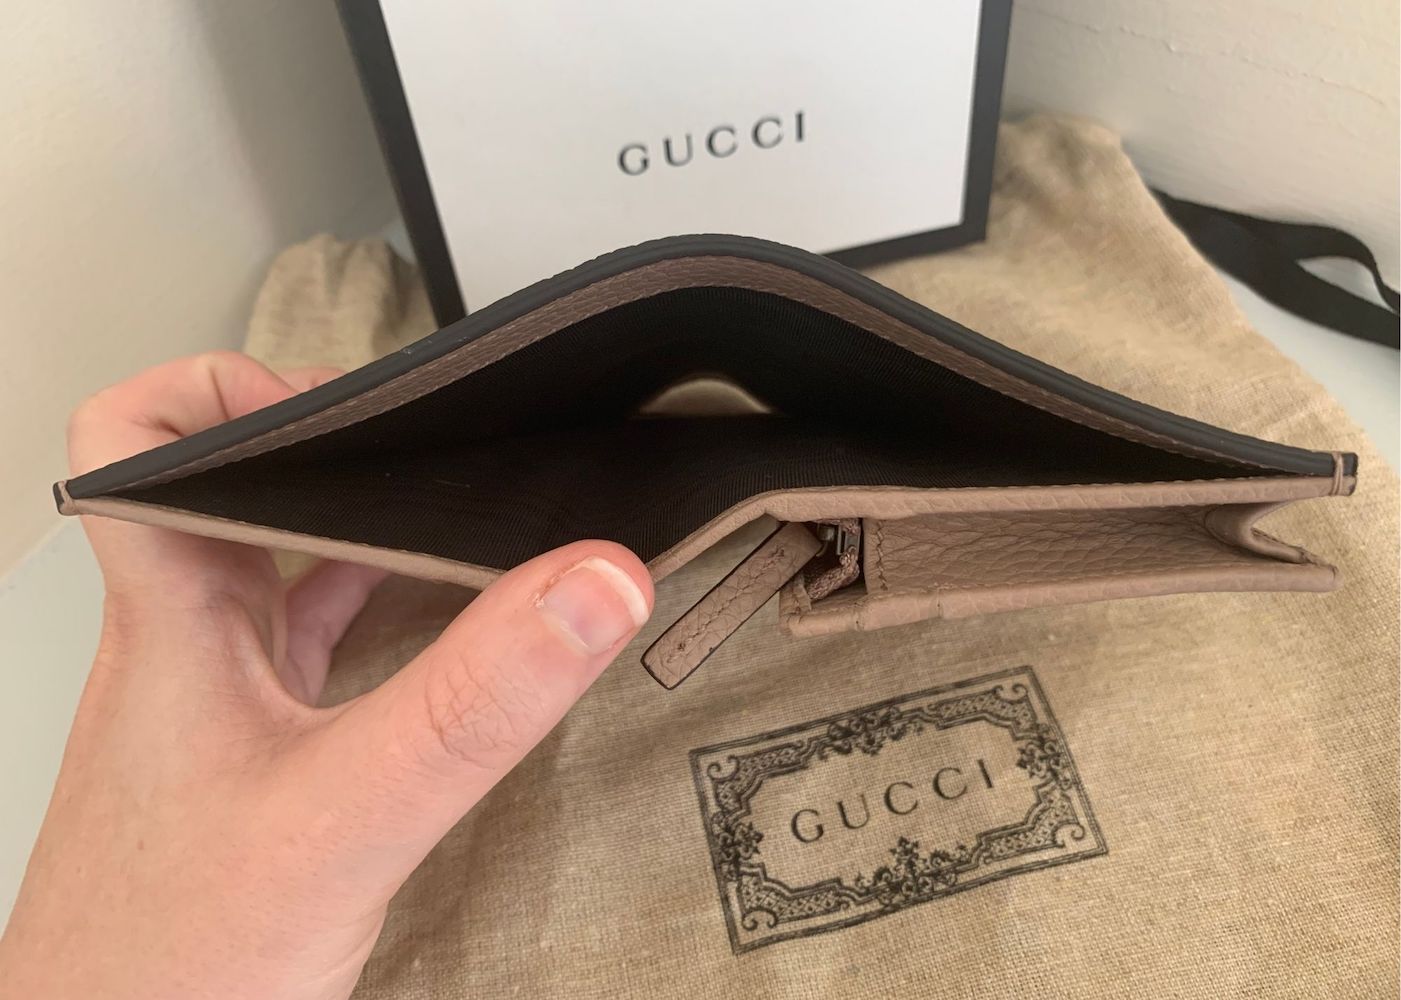 Gucci Ophidia GG Supreme Pouch NEW - J'adore Fashion Boutique